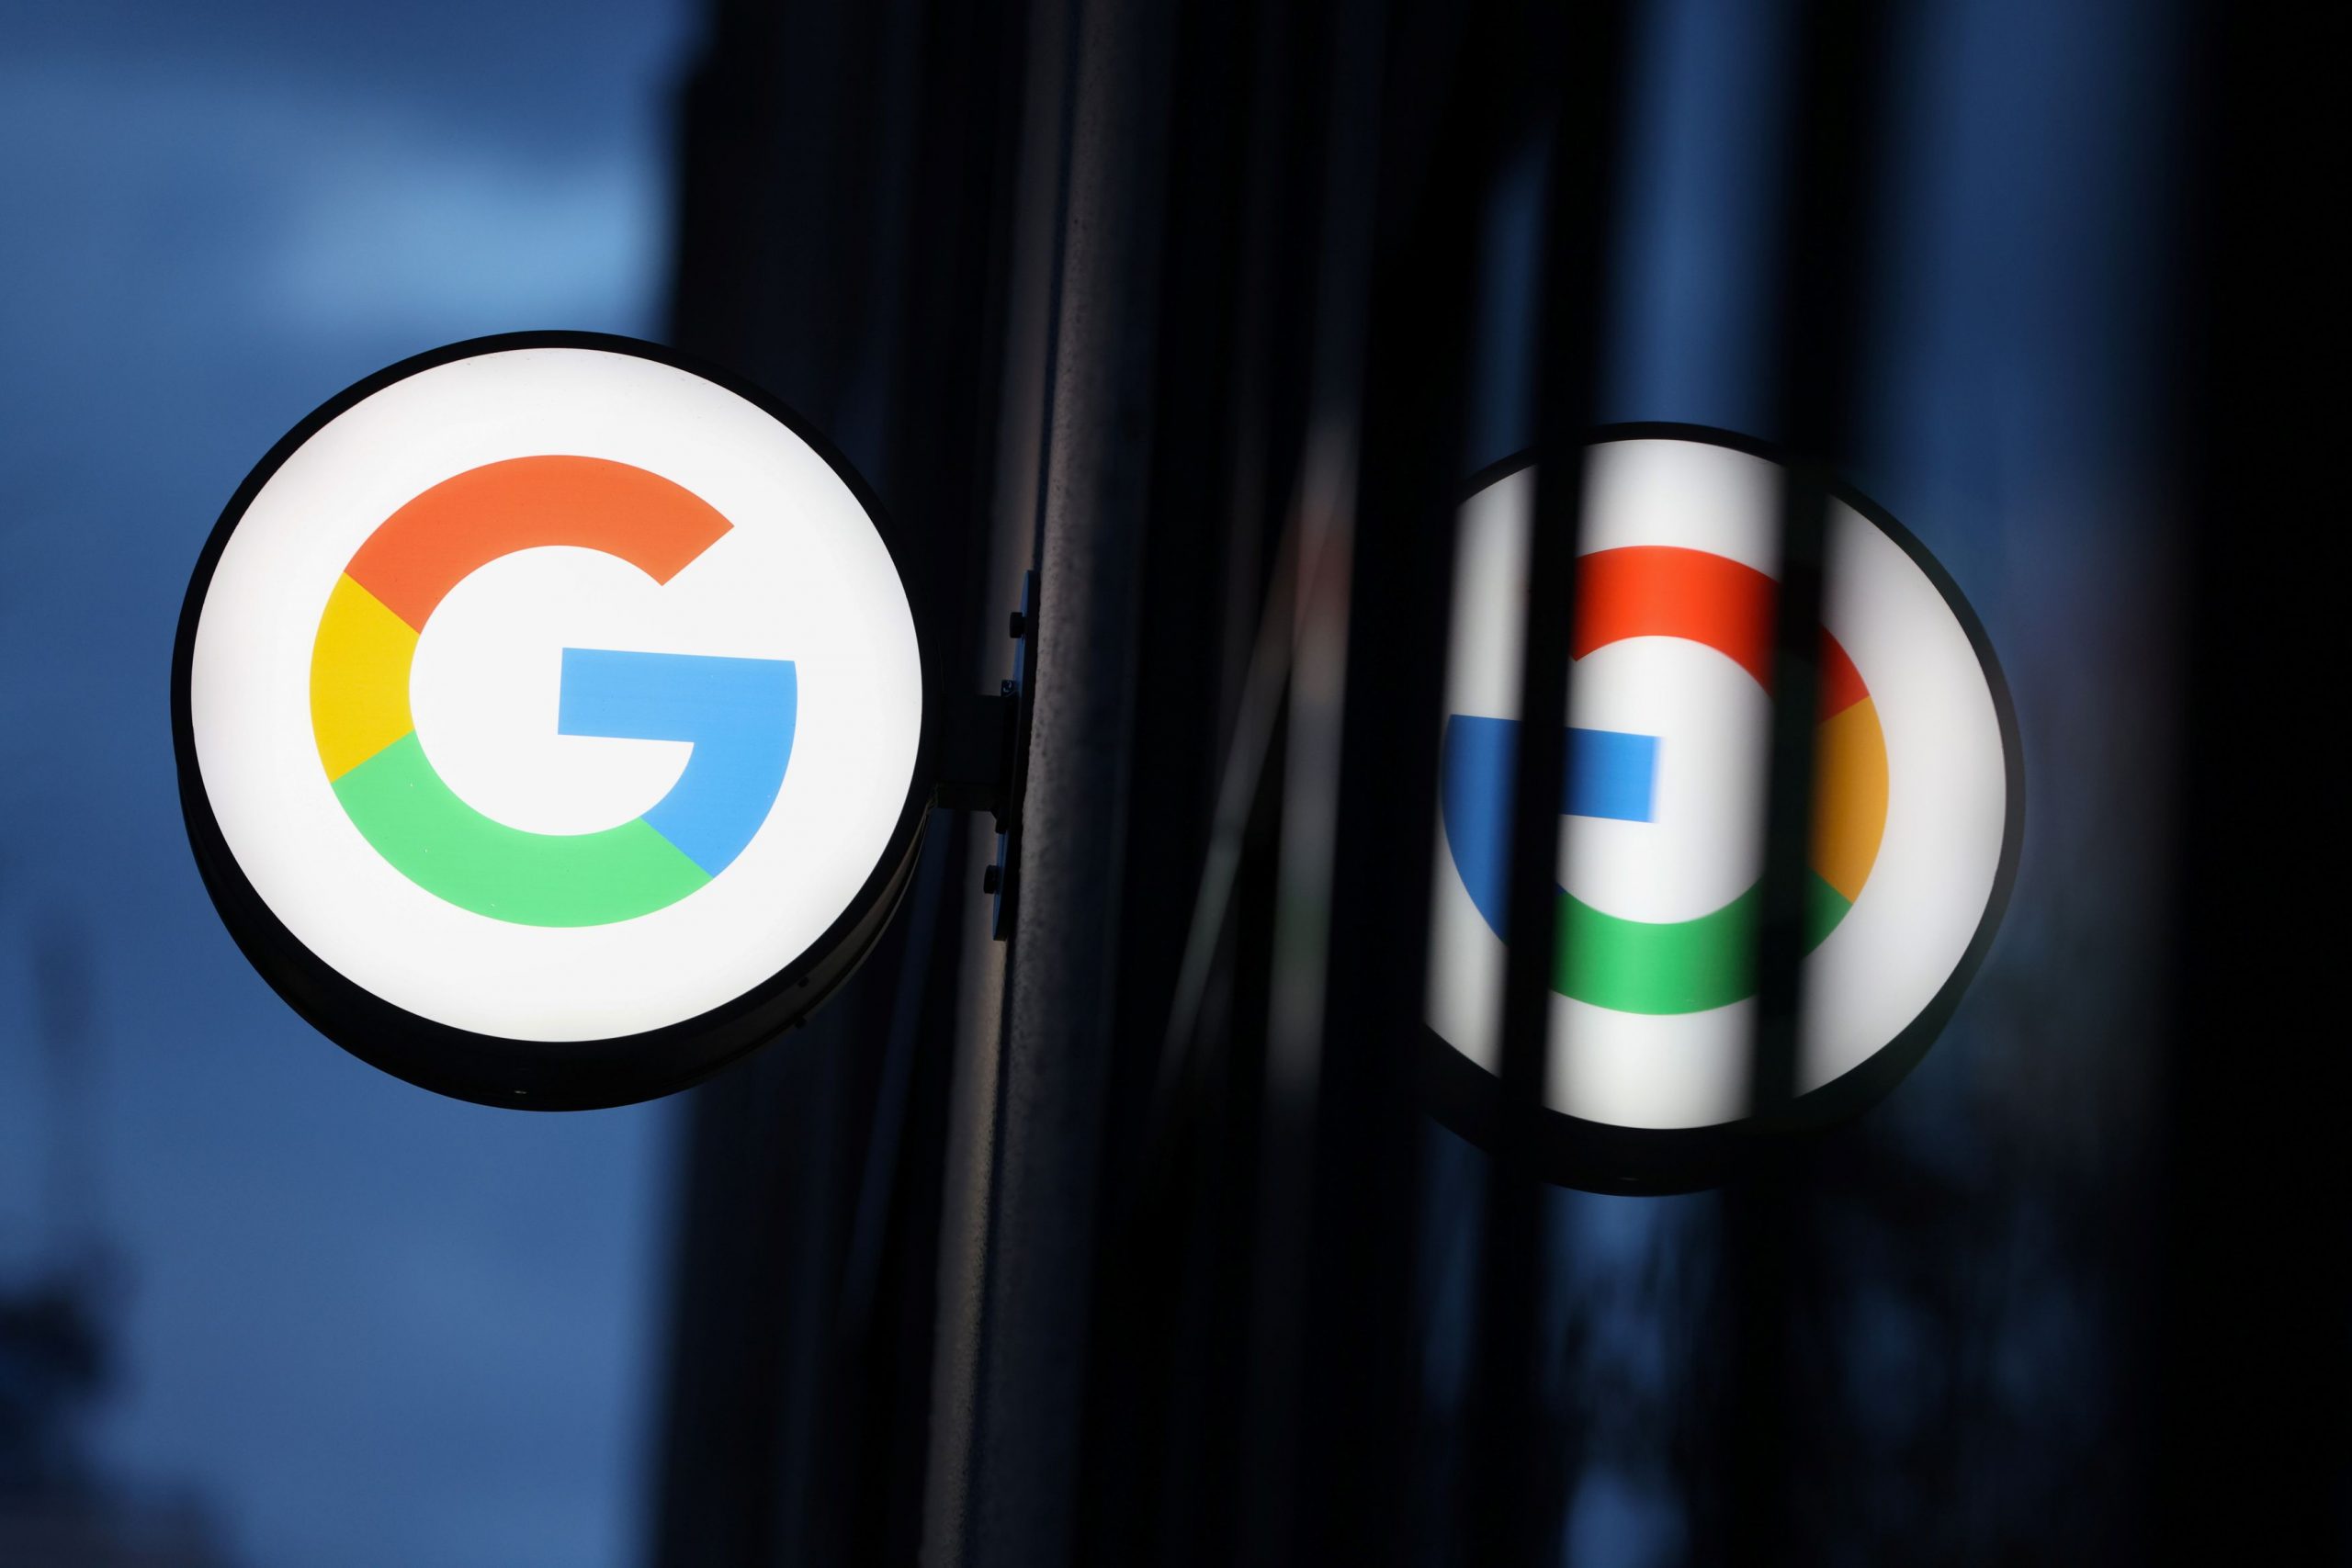 Συγγενικά δικαιώματα – Google και Γαλλικό Πρακτορείο κατέληξαν σε συμφωνία